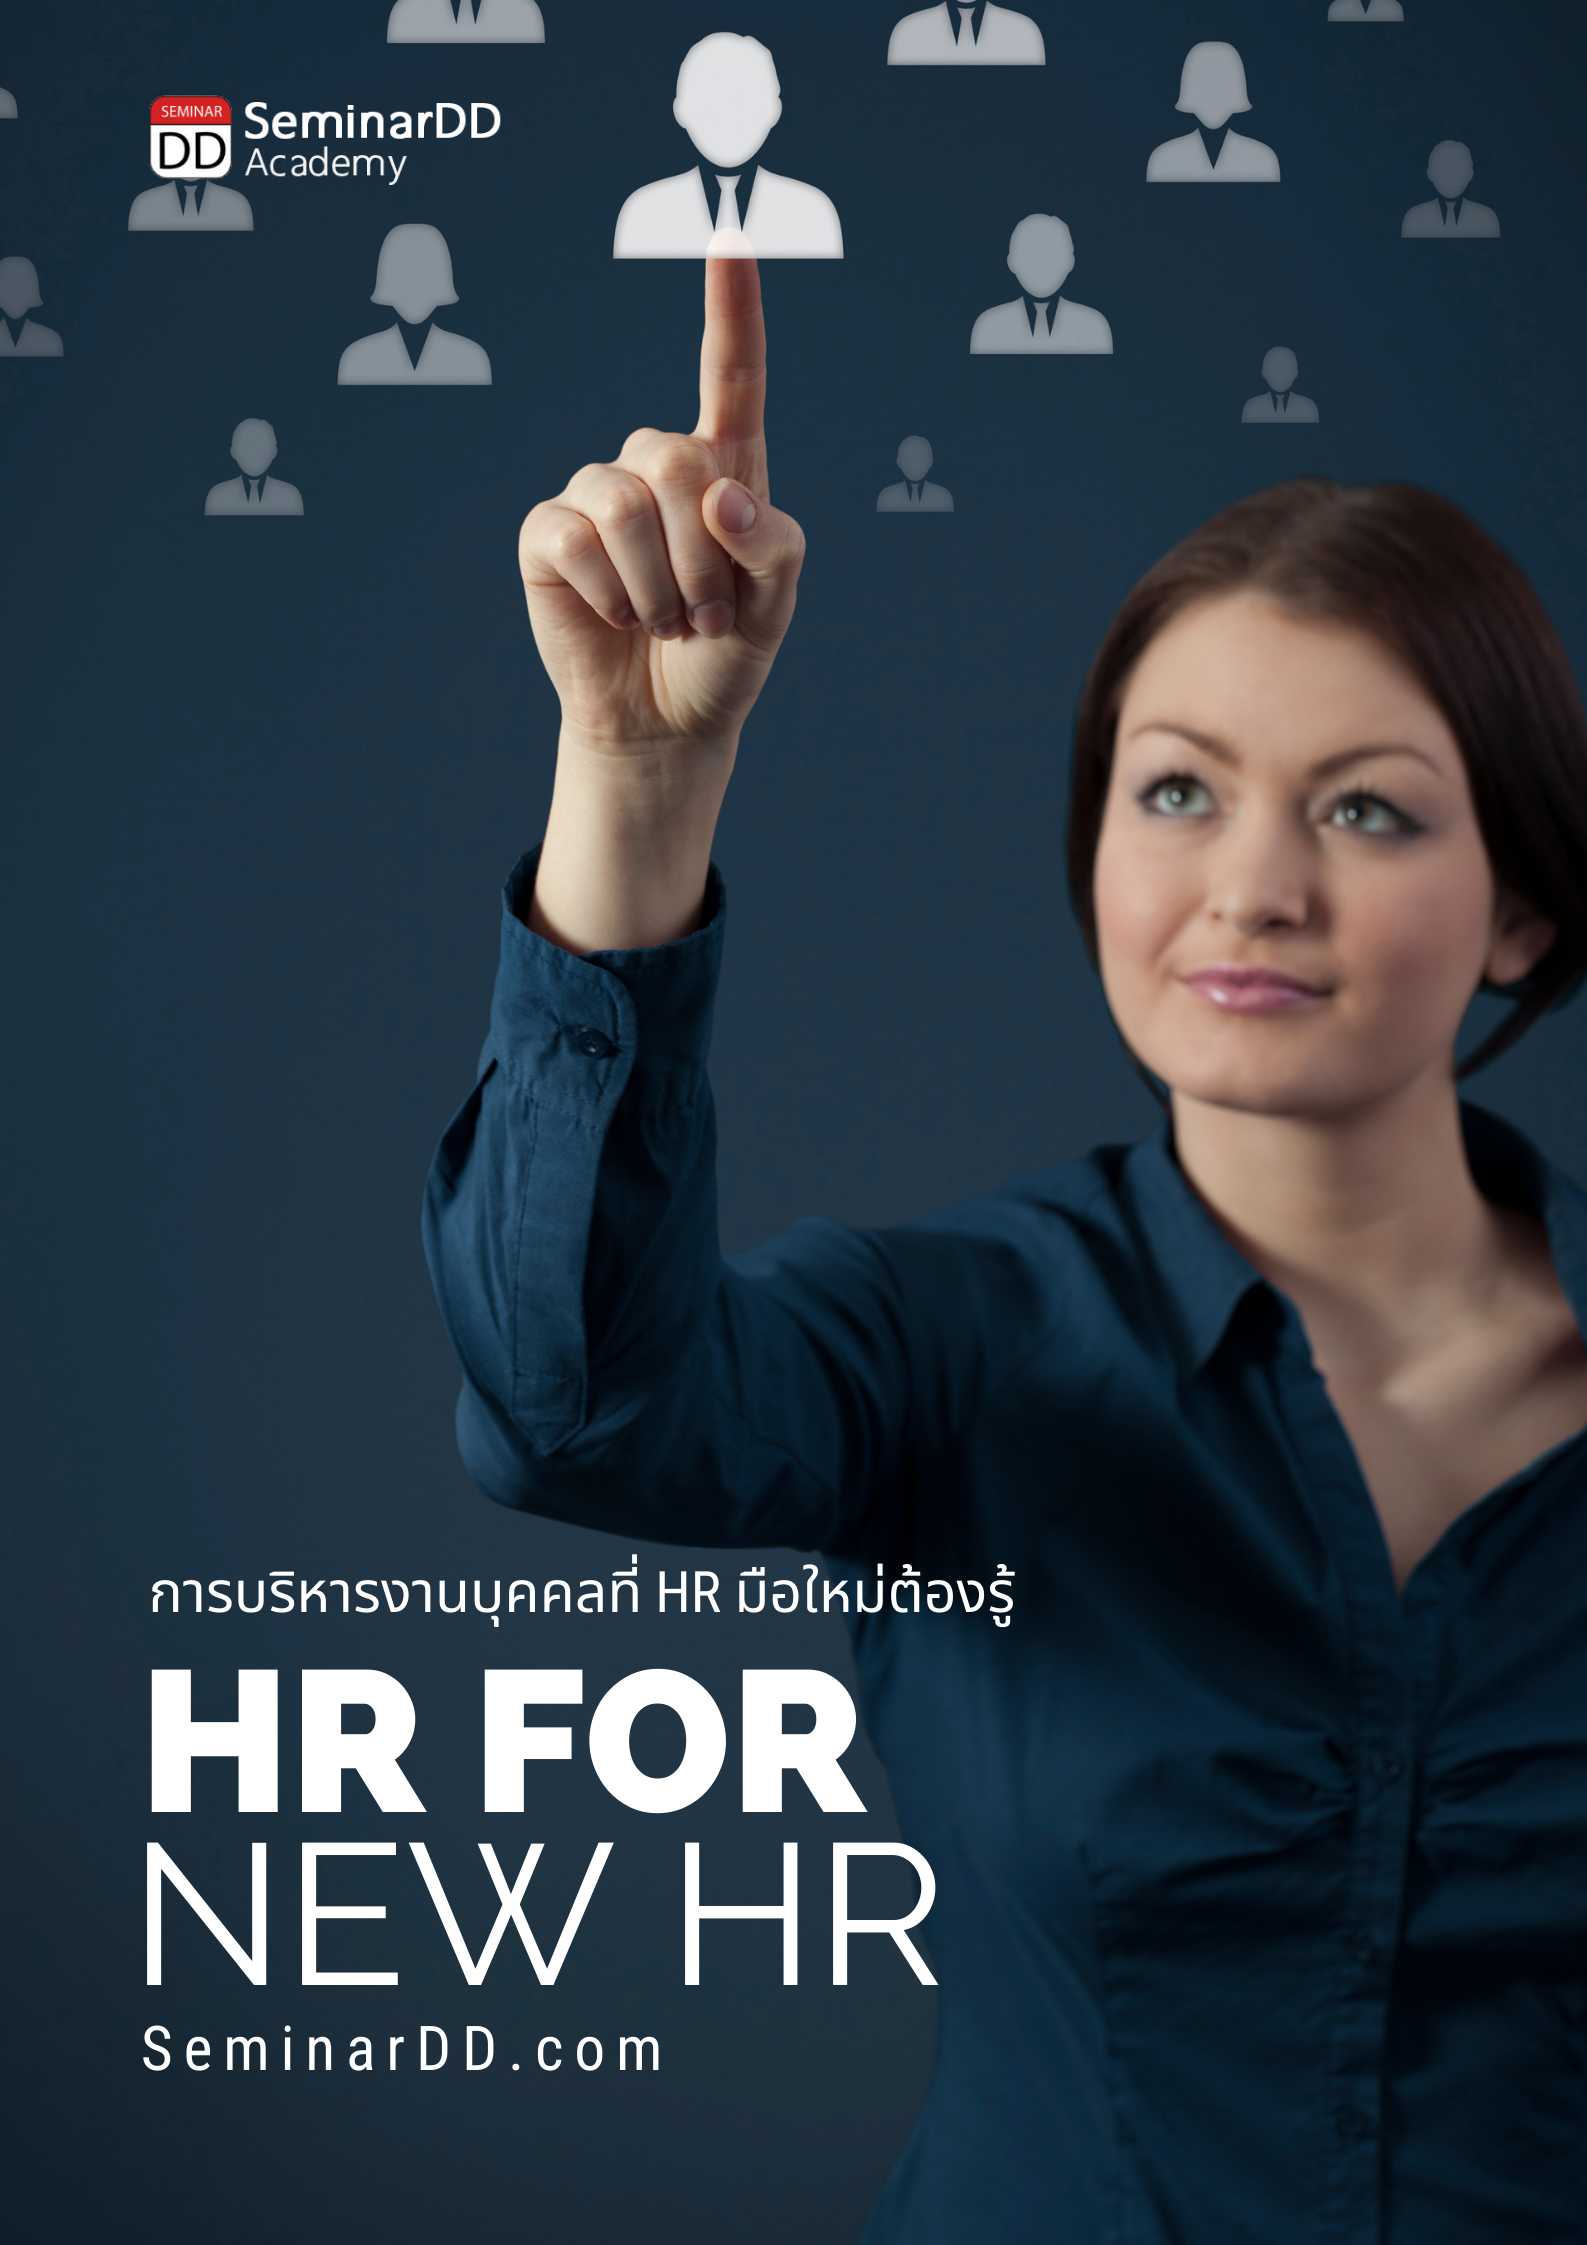 การบริหารงานบุคคลที่ HR มือใหม่ต้องรู้  (HR for new HR)